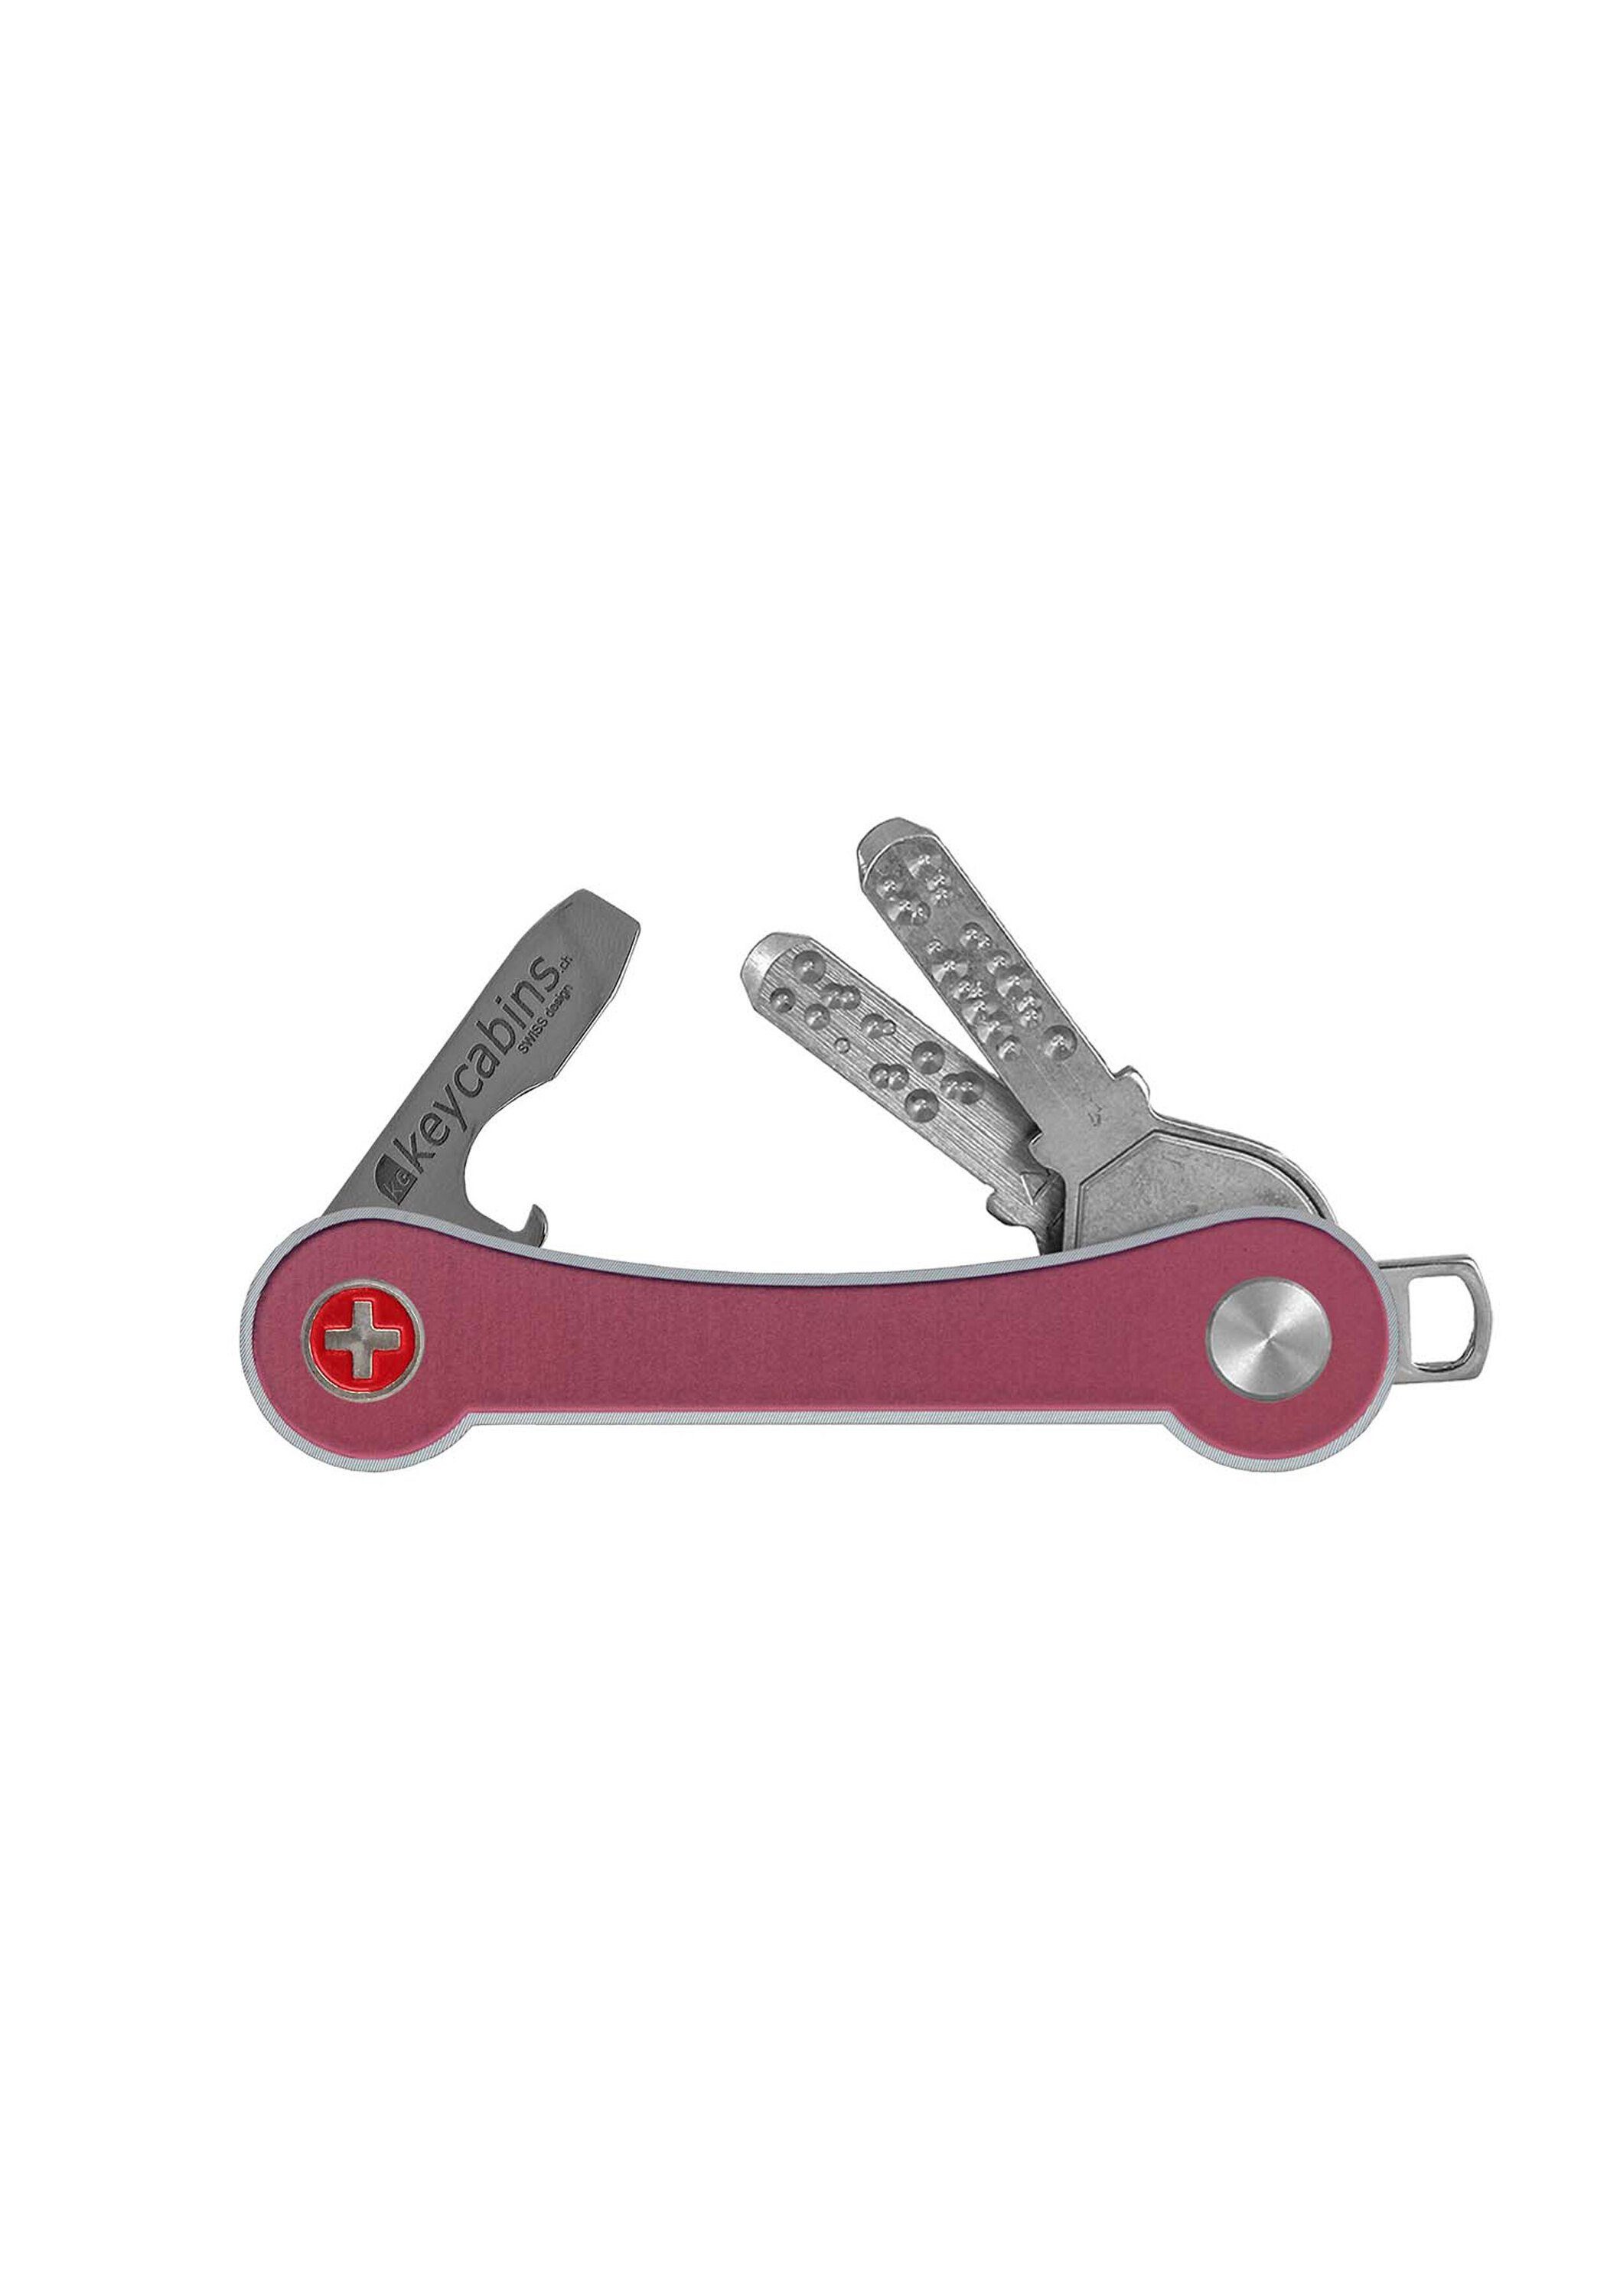 Made Schlüsselanhänger Aluminium frame, SWISS keycabins pink